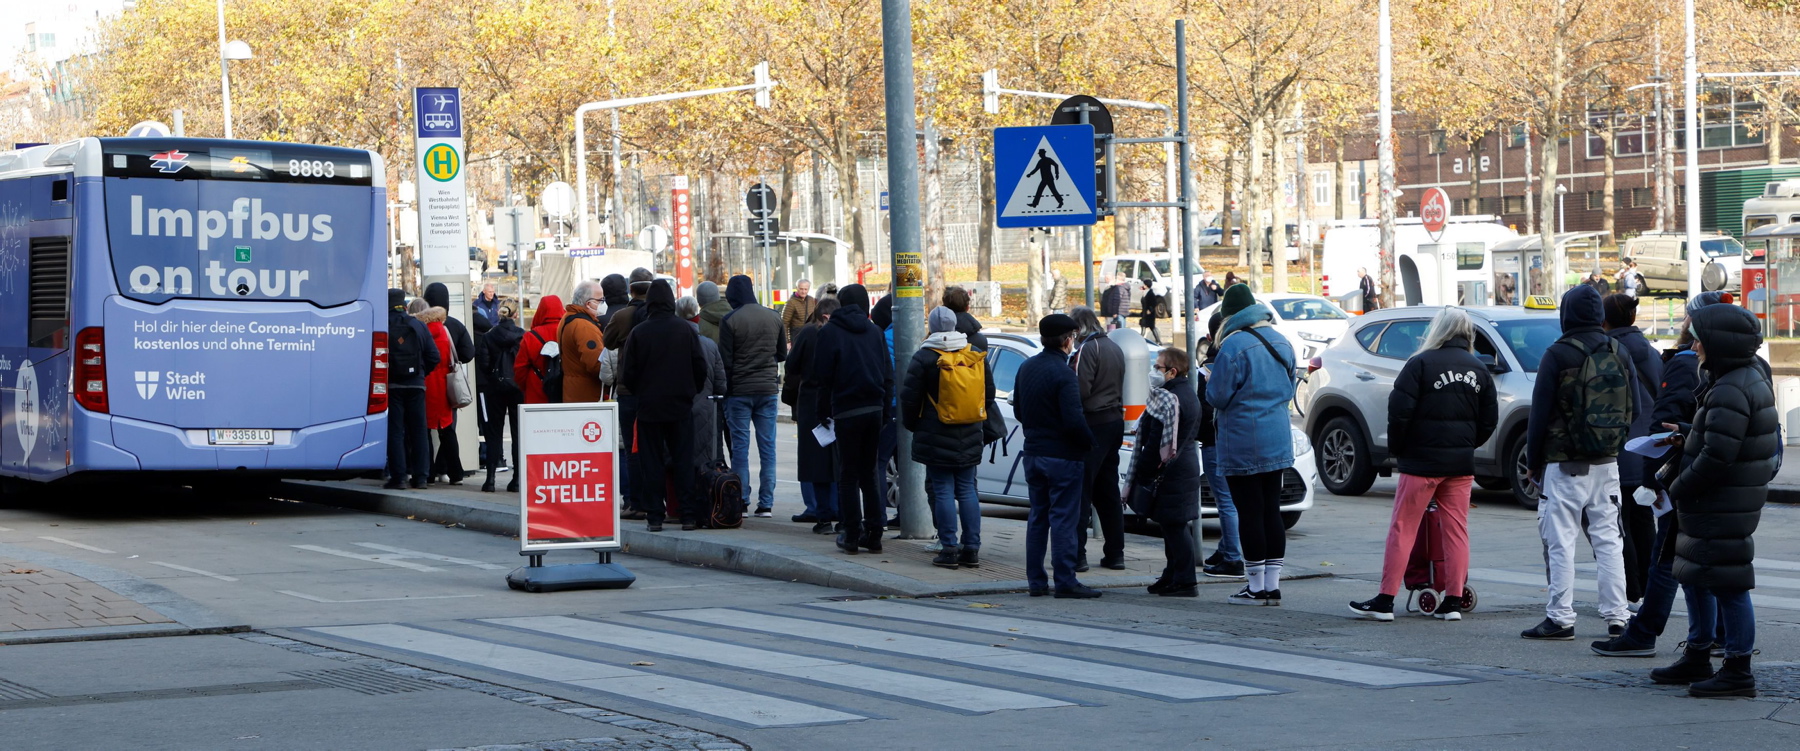 Kolejka do autobusu, w którym można się zaszczepić przeciwko koronawirusowi, Wiedeń, 18 listopada 2021 r.